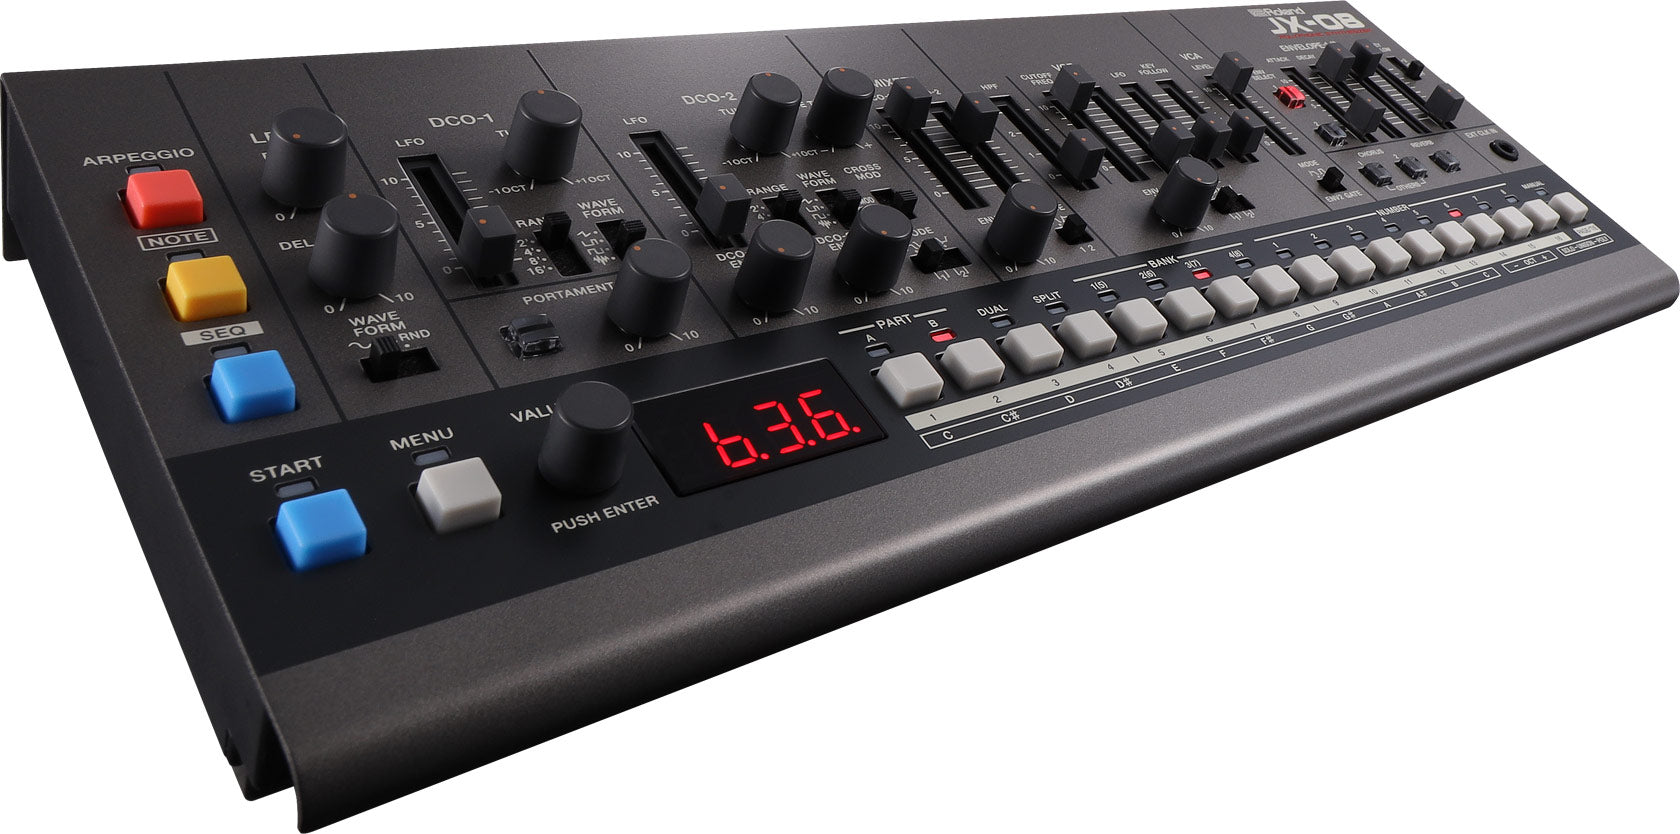 Roland JX-08 Sound Module